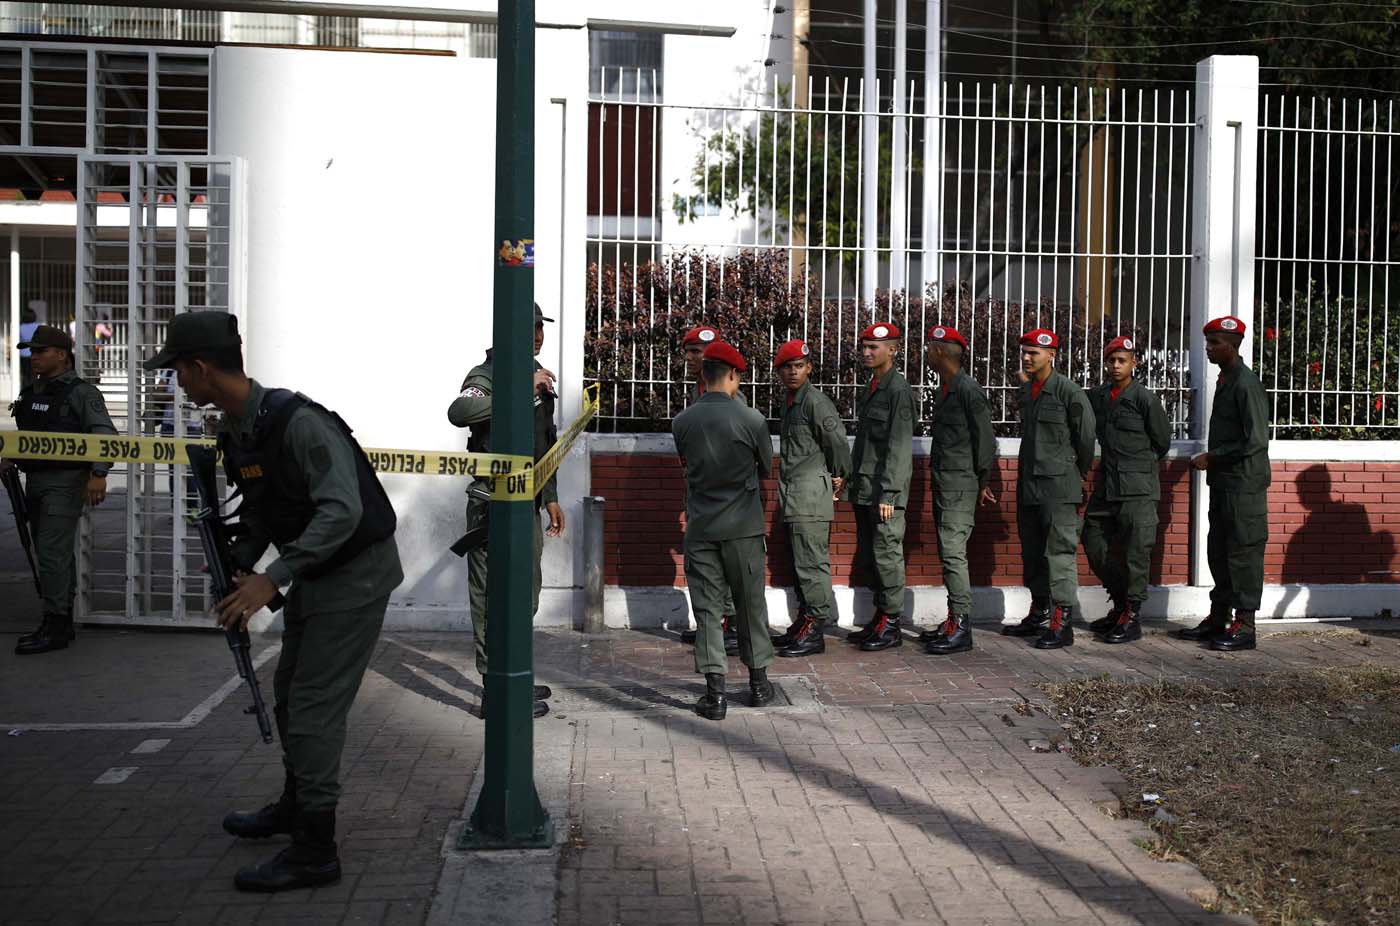 FOTOS: En los desolados centros de votación, sólo los soldados hacen la cola #20May